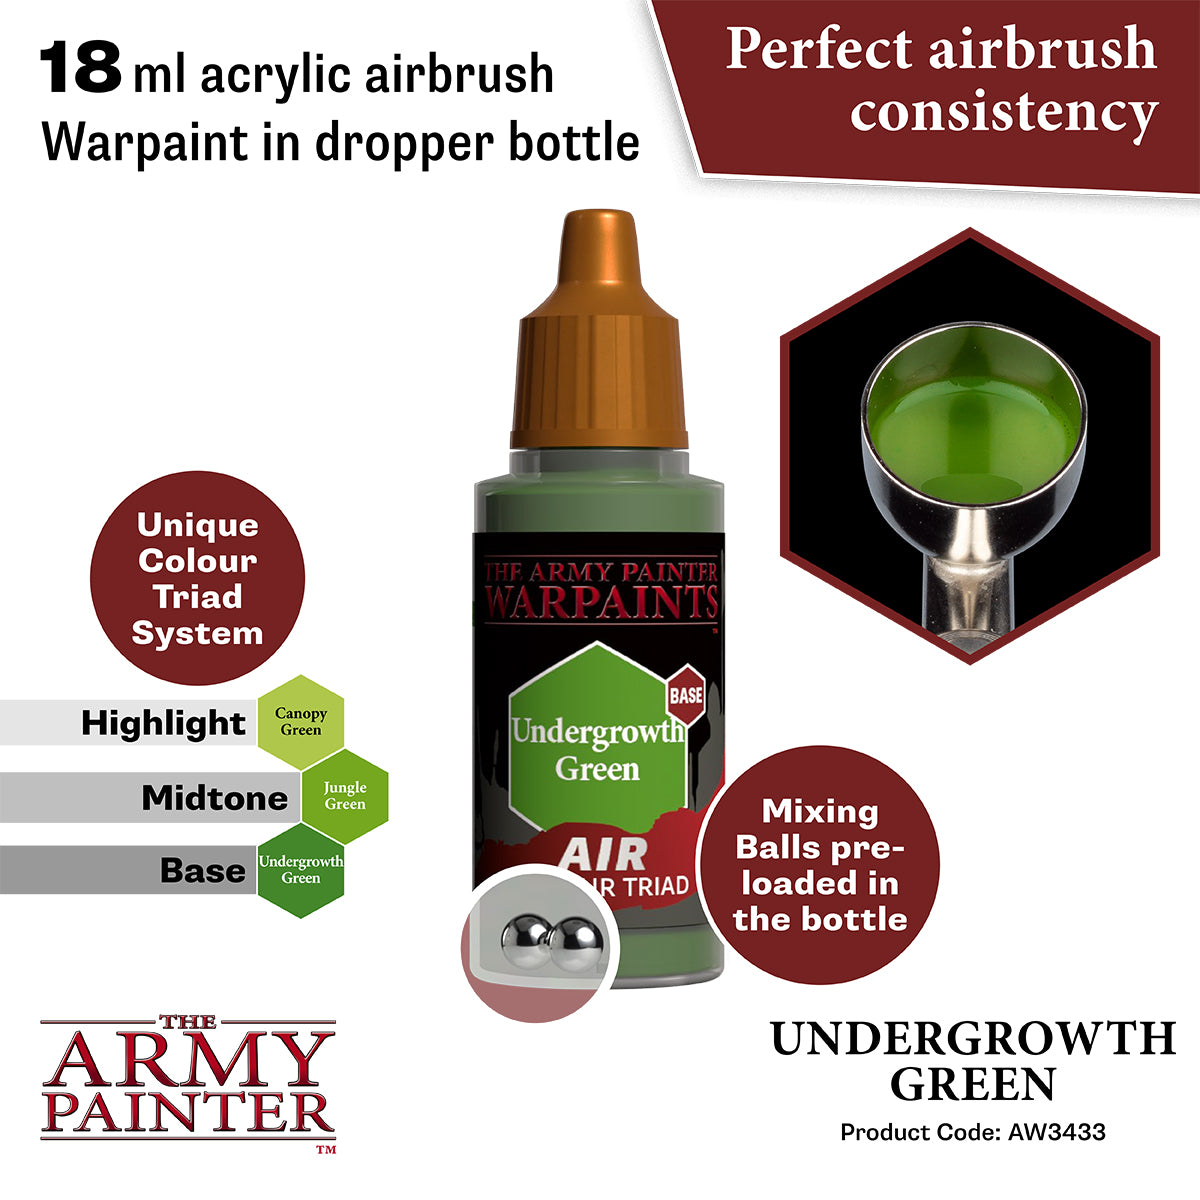 Warpaints Air: Undergrowth Green